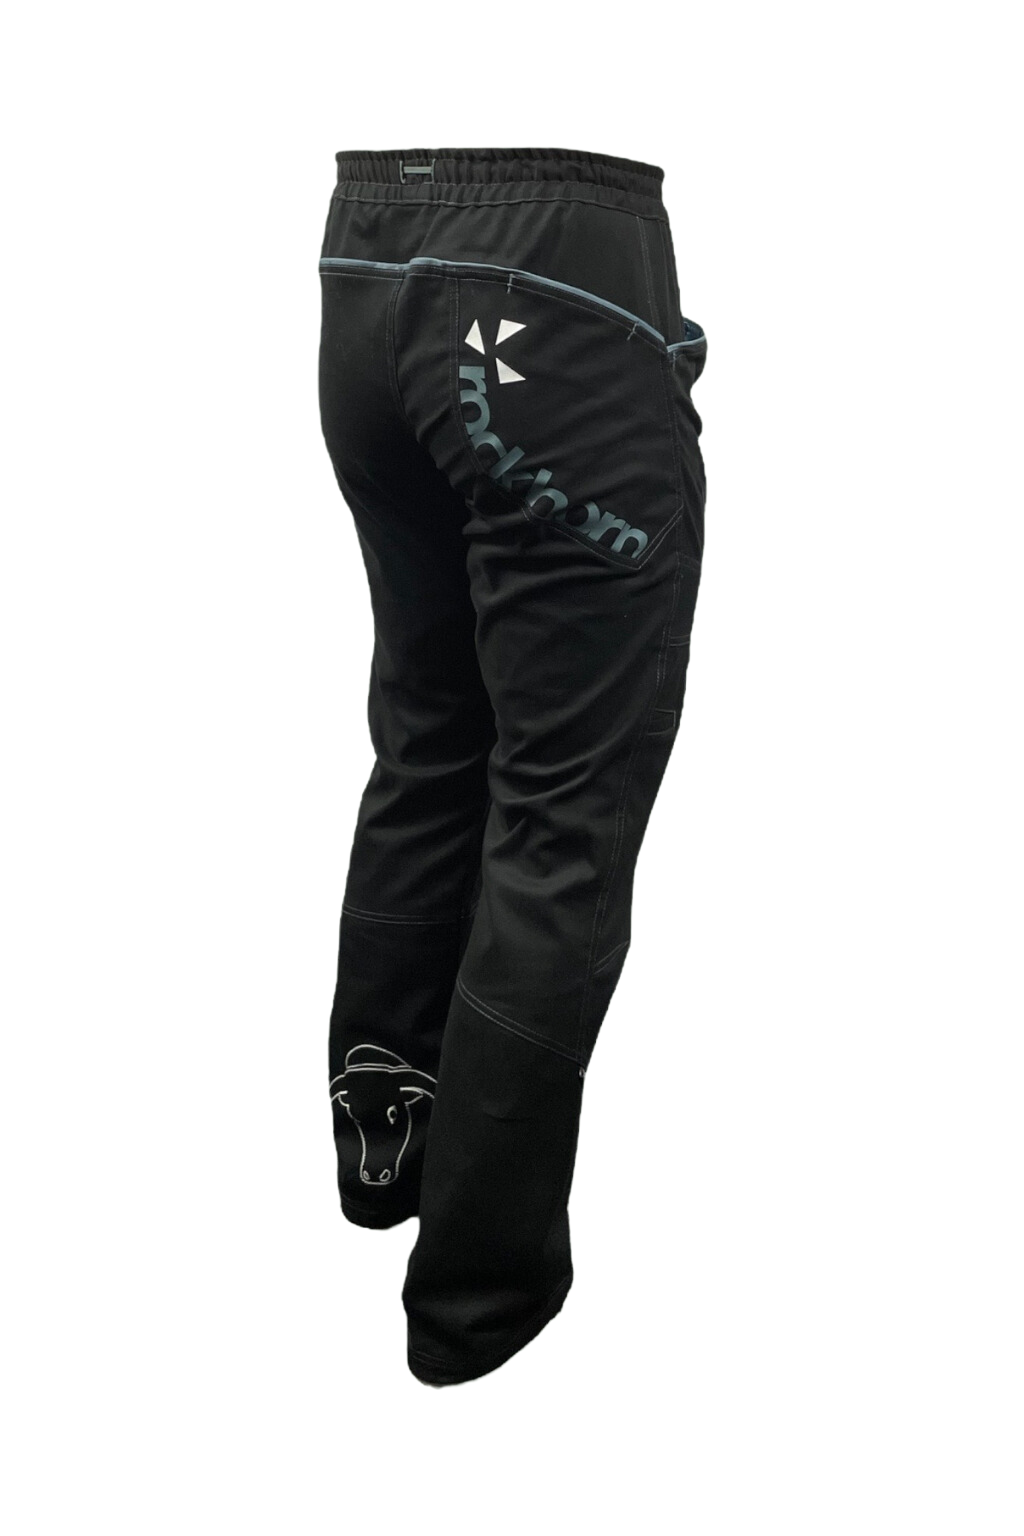 pánské kalhoty UNIVERSITY NEW / černé KALHOTY: XL